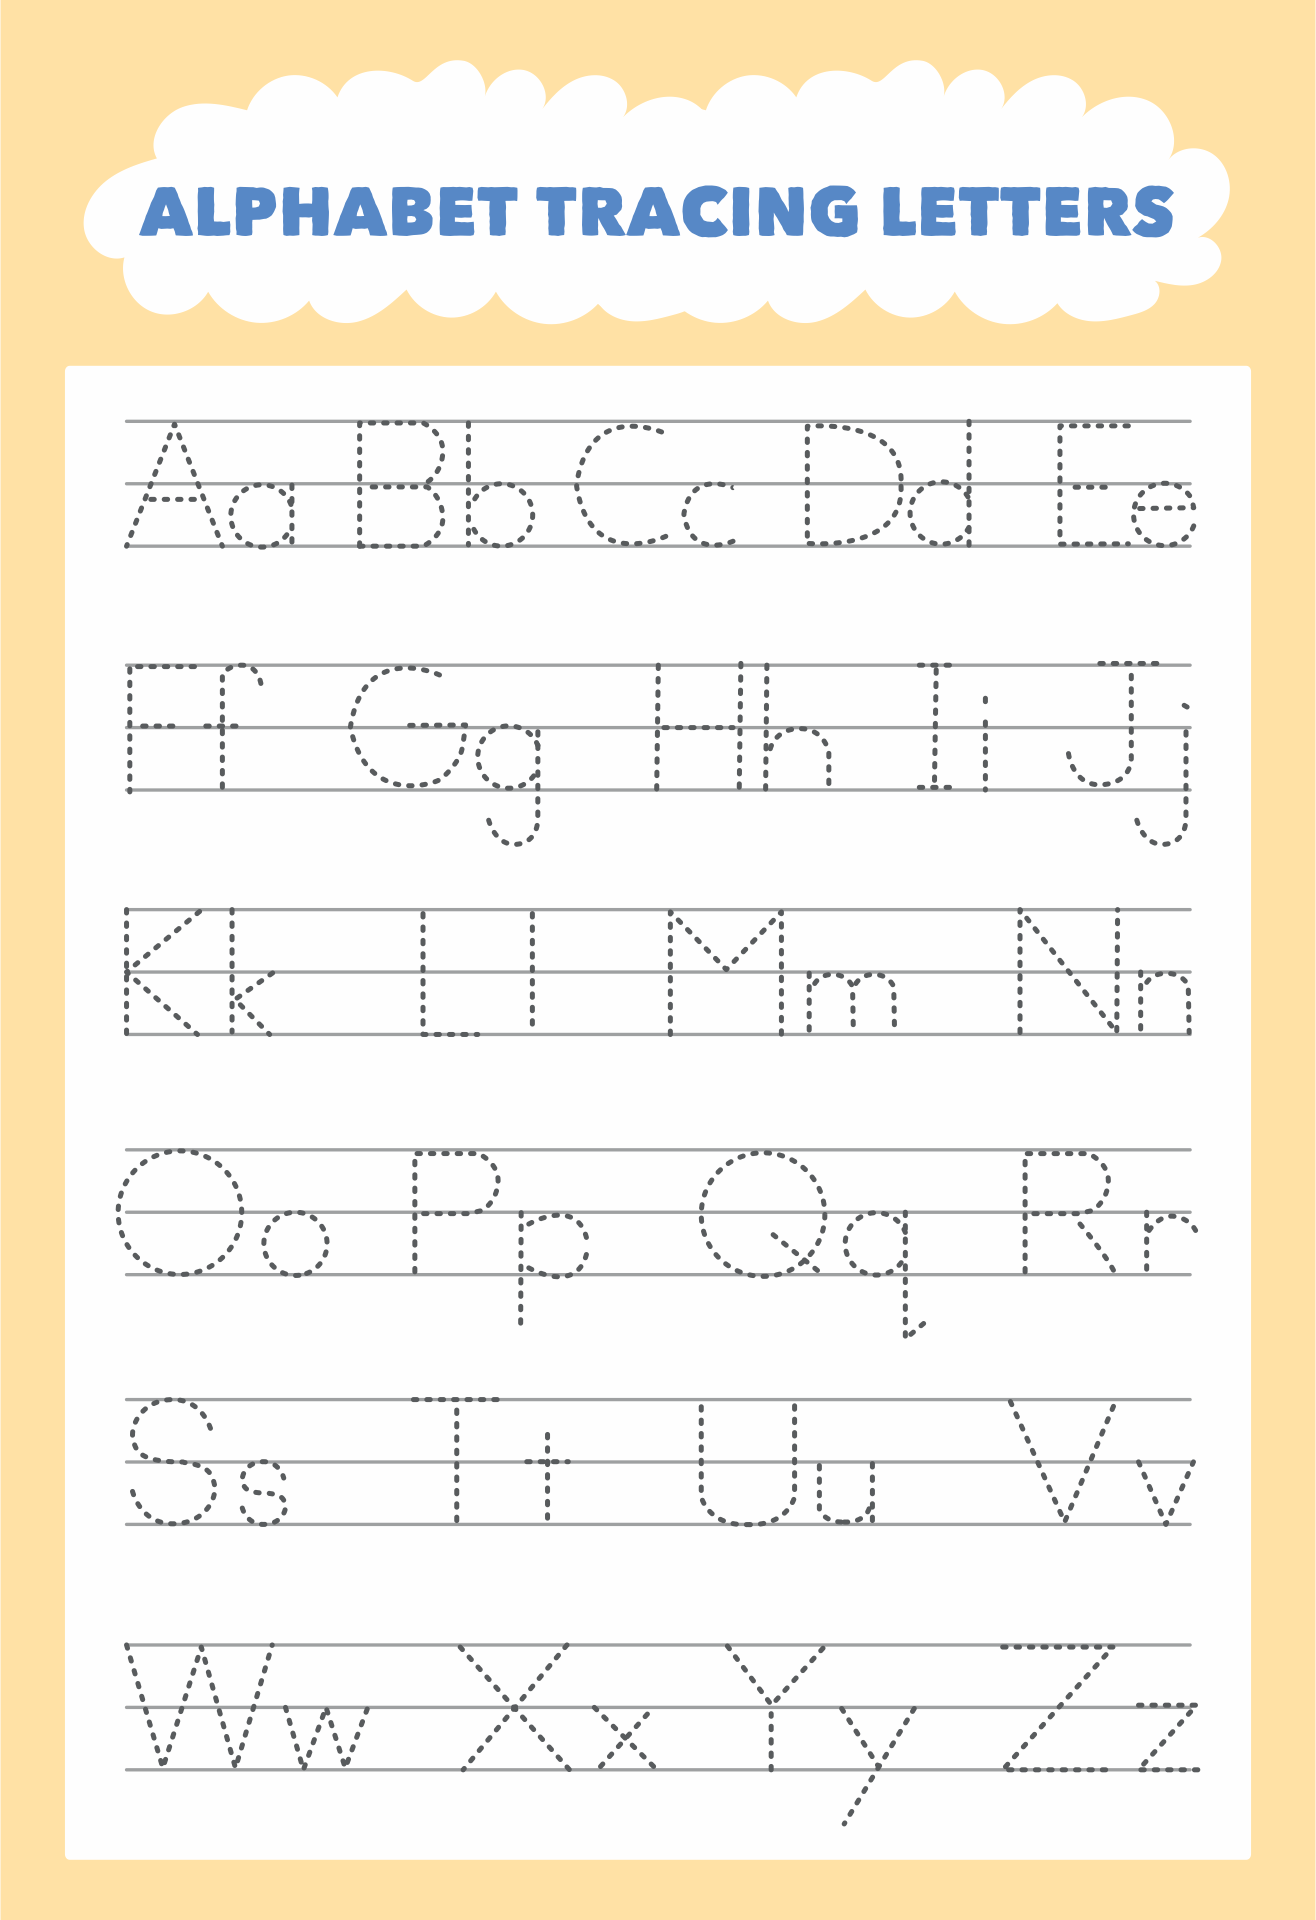 printable-alphabet-trace-letters-read-iesanfelipe-edu-pe